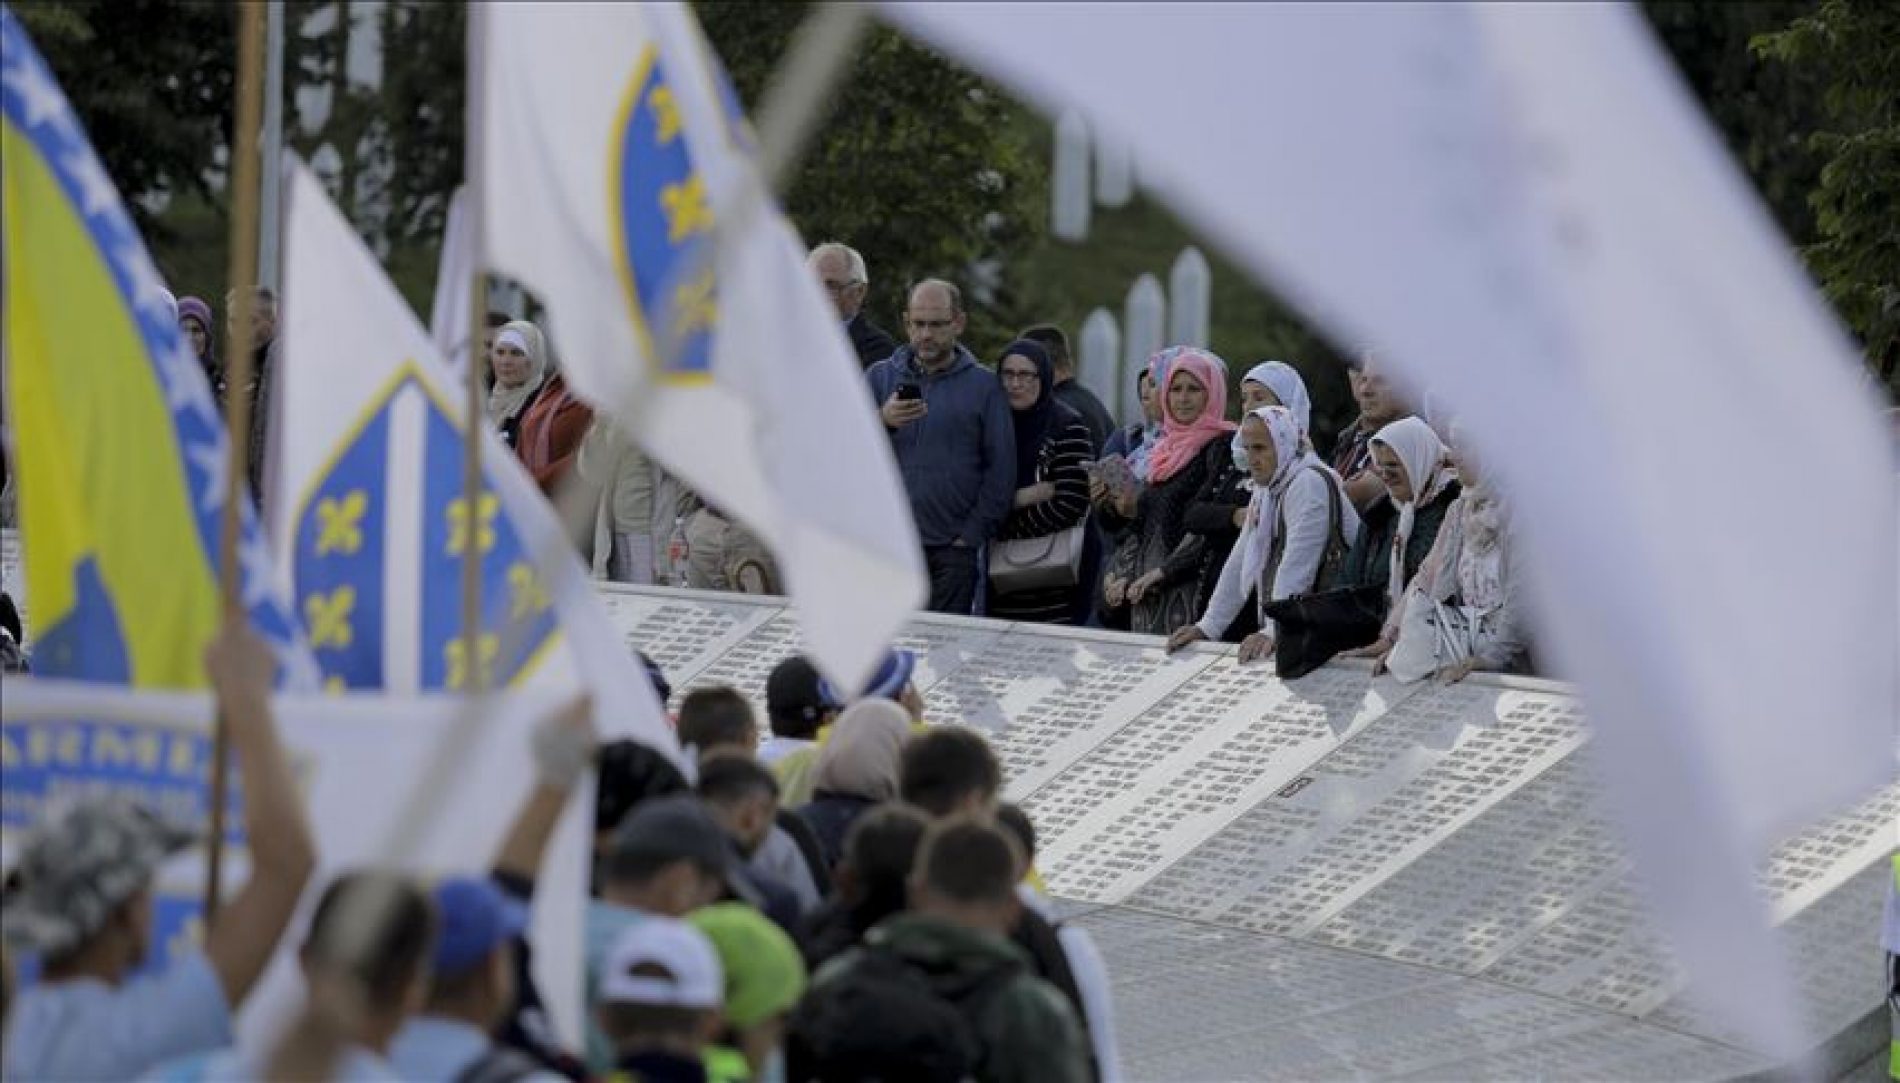 Memorijalni centar Srebrenica ponovo otvoren; u Maršu mira ove godine najviše 100 učesnika